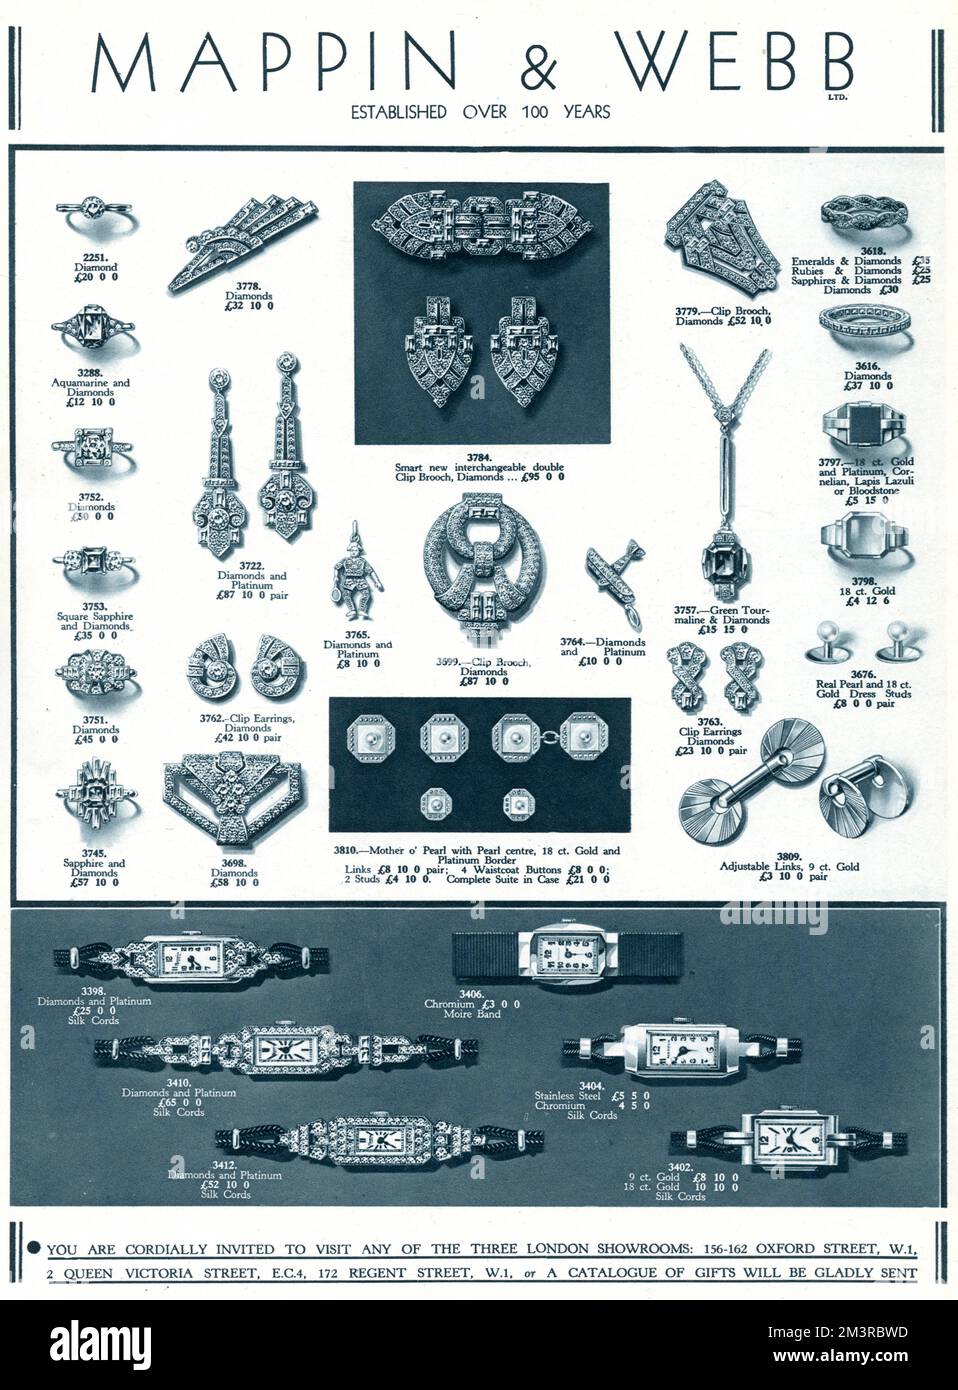 Feiner Schmuck von Mappin &amp; Webb, mit Diamantringen, Broschen, Ohrringen, Armbanduhren, Manschettenknöpfen und Anhängern. Datum: 1934 Stockfoto